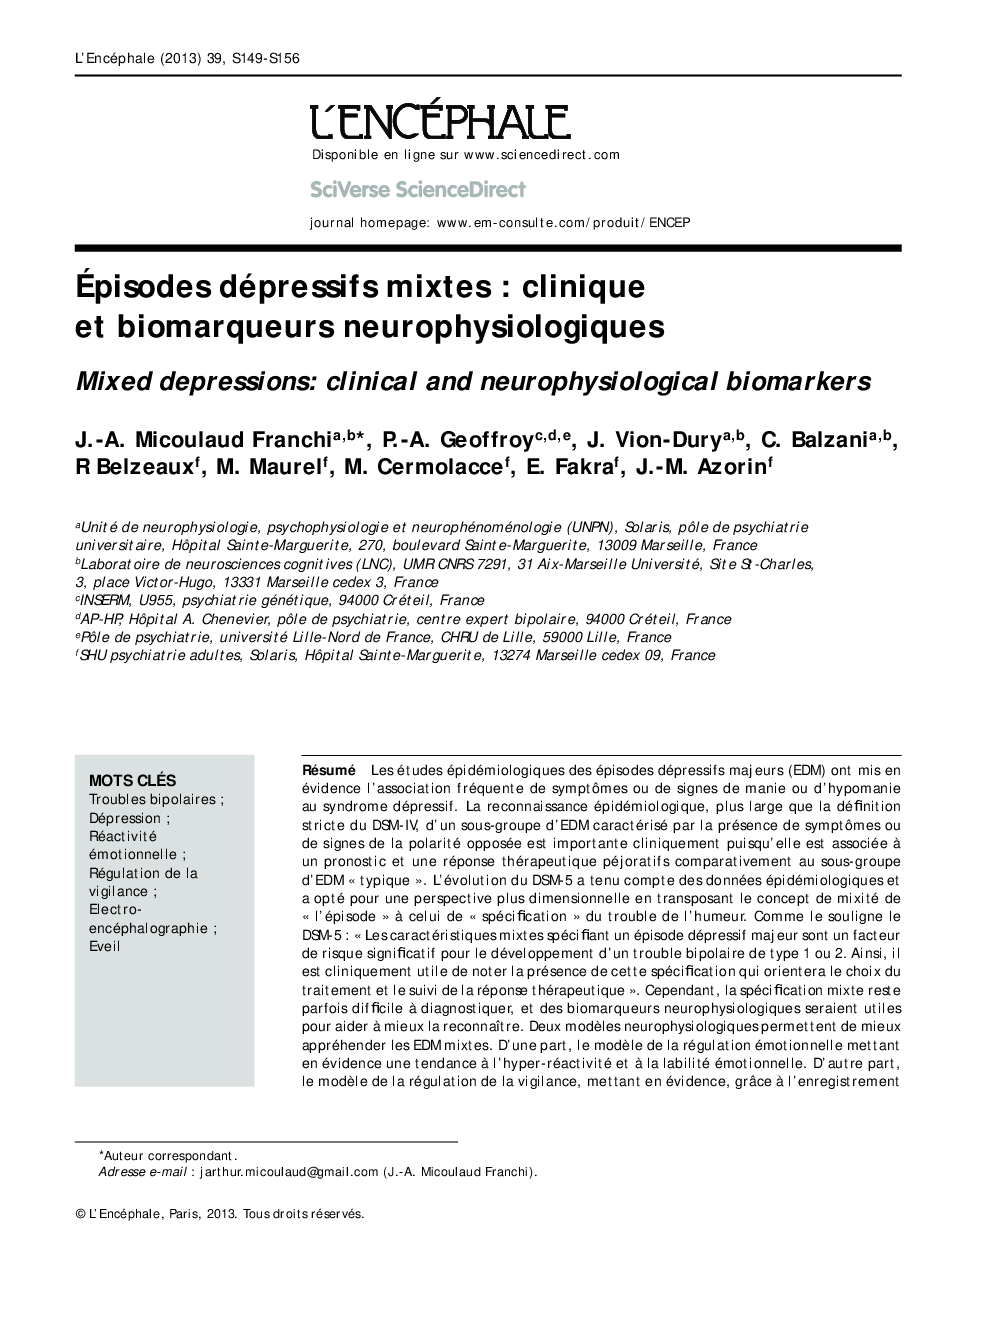 Ãpisodes dépressifs mixtes : clinique et biomarqueurs neurophysiologiques